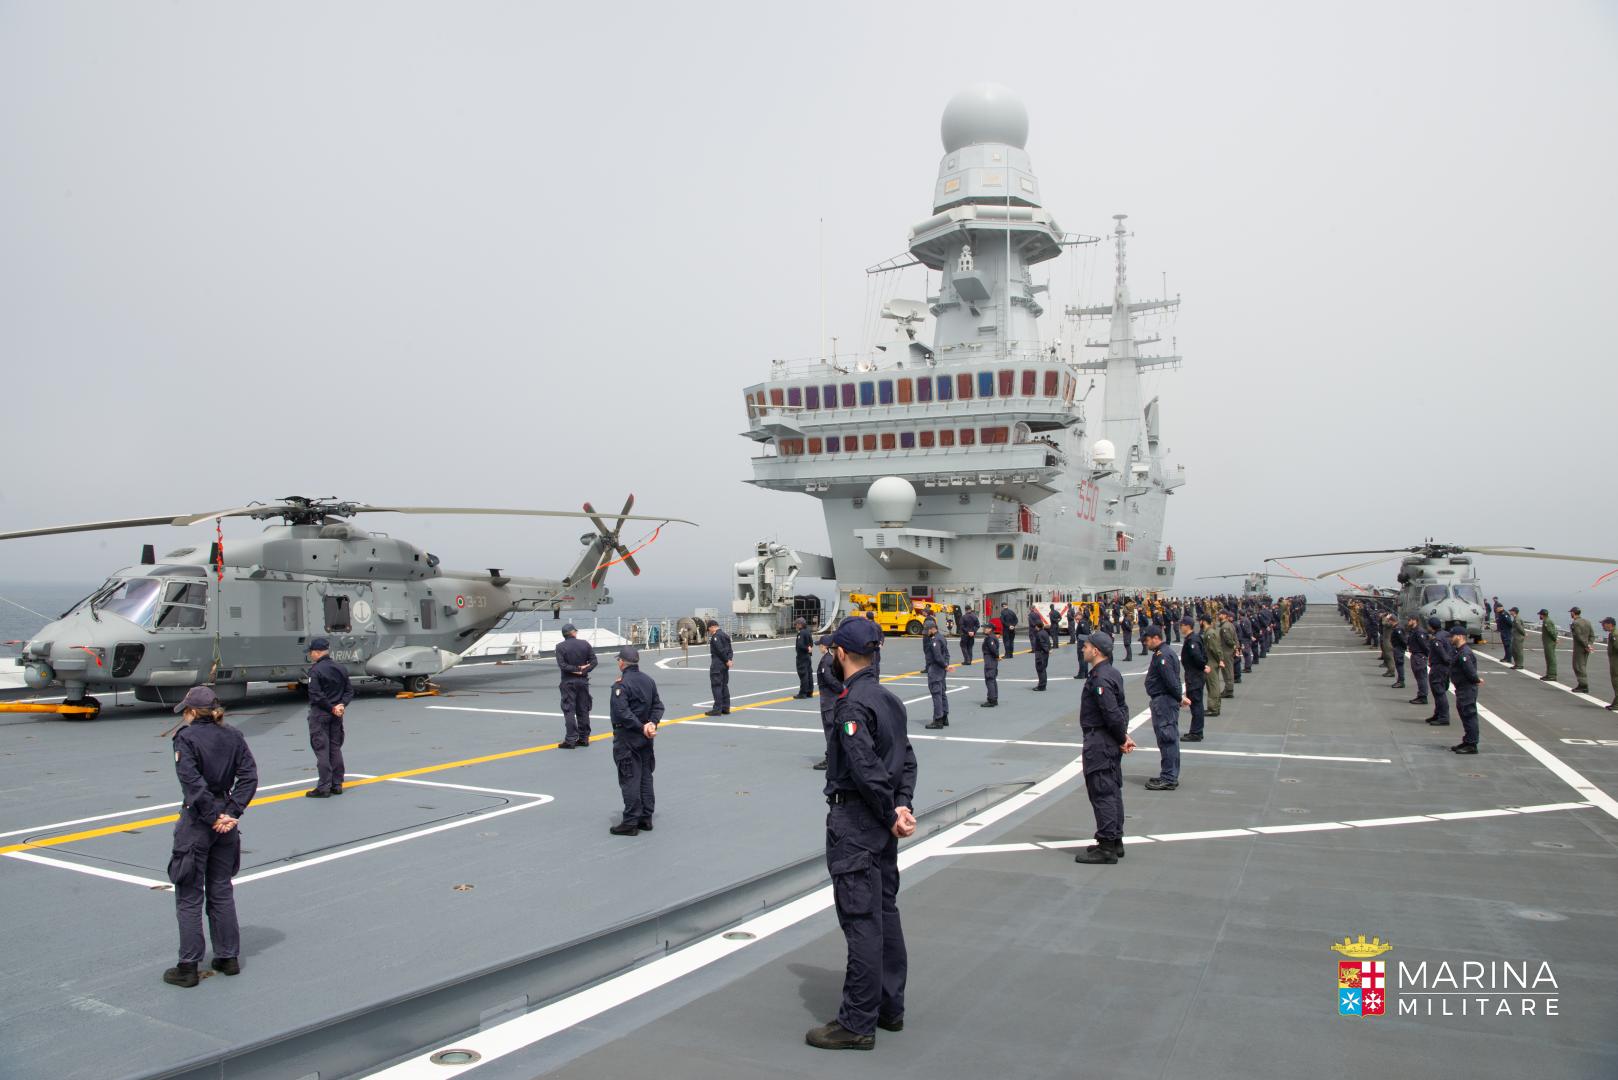 Marina Militare - la portaerei Cavour rientra a Taranto